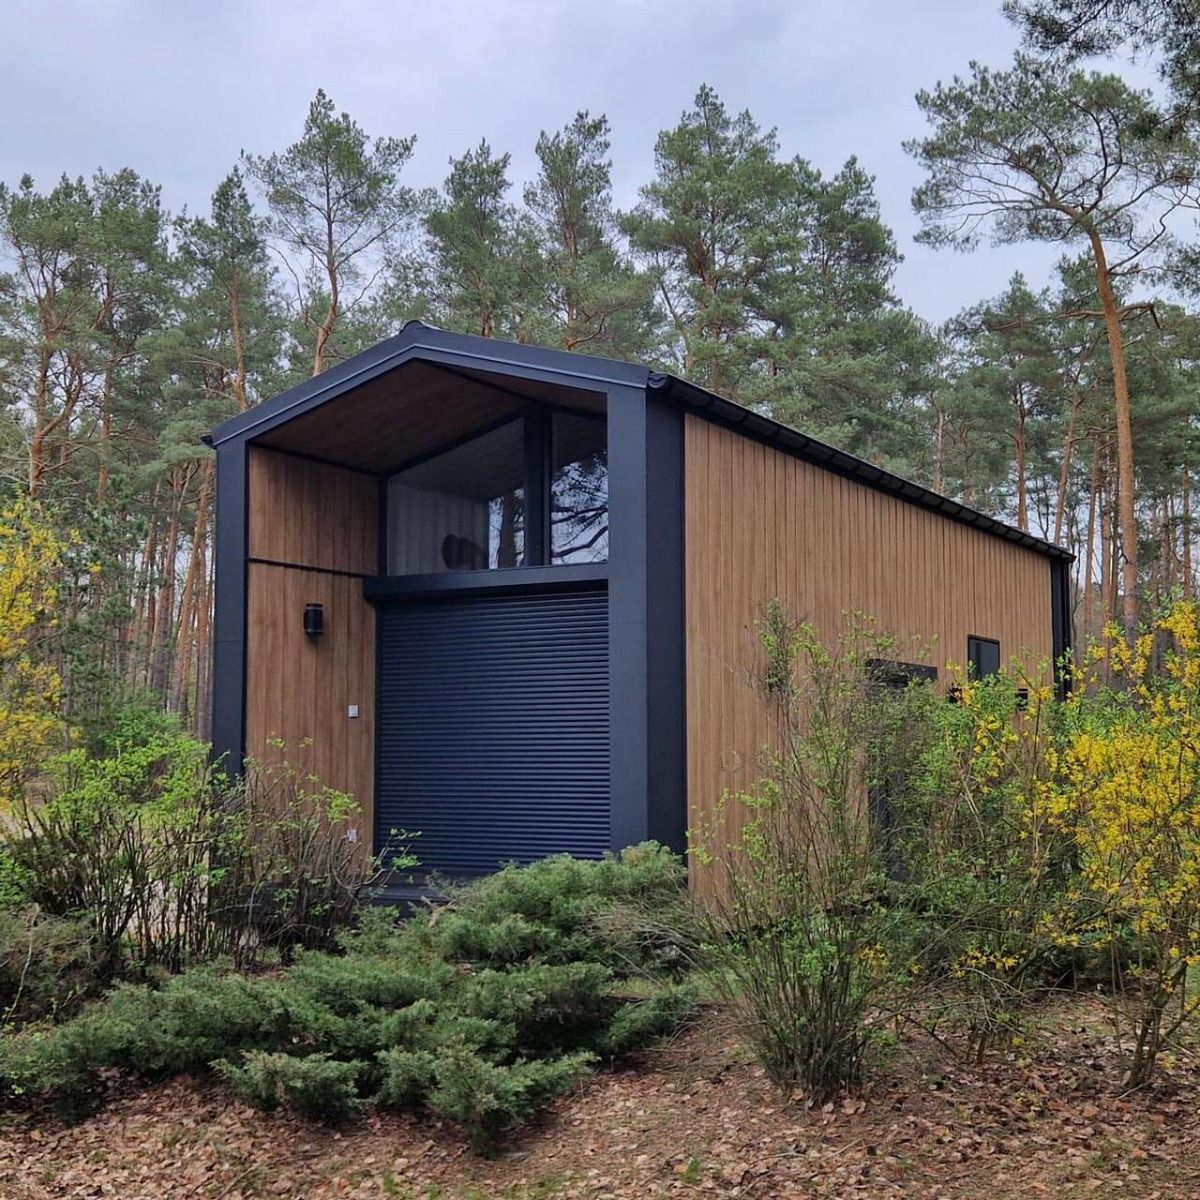 Modernes Mobilheim in Holzoptik mit vertikal verlegten Stülppaneelen aus Kunststoff